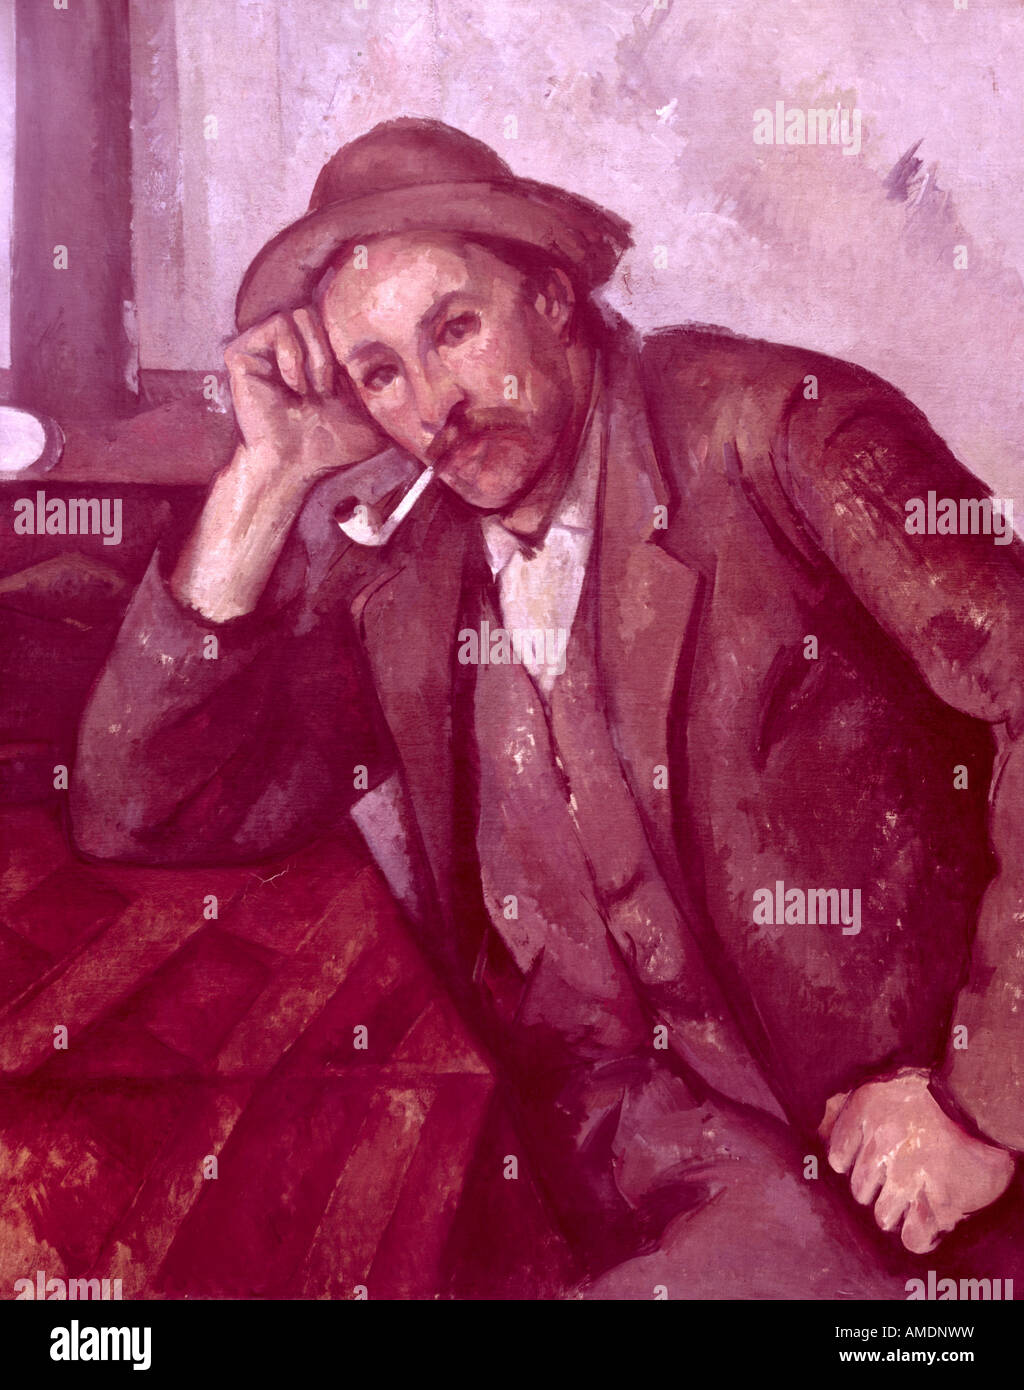 Bildende Kunst, Cézanne, Paul, (1839 - 1906), der Malerei, der "Raucher", 1890, Öl auf Leinwand, 92,5 cm x 73,5 cm, kommunale Arts Gallery, Mannheim, Artist's Urheberrecht nicht gelöscht werden Stockfoto